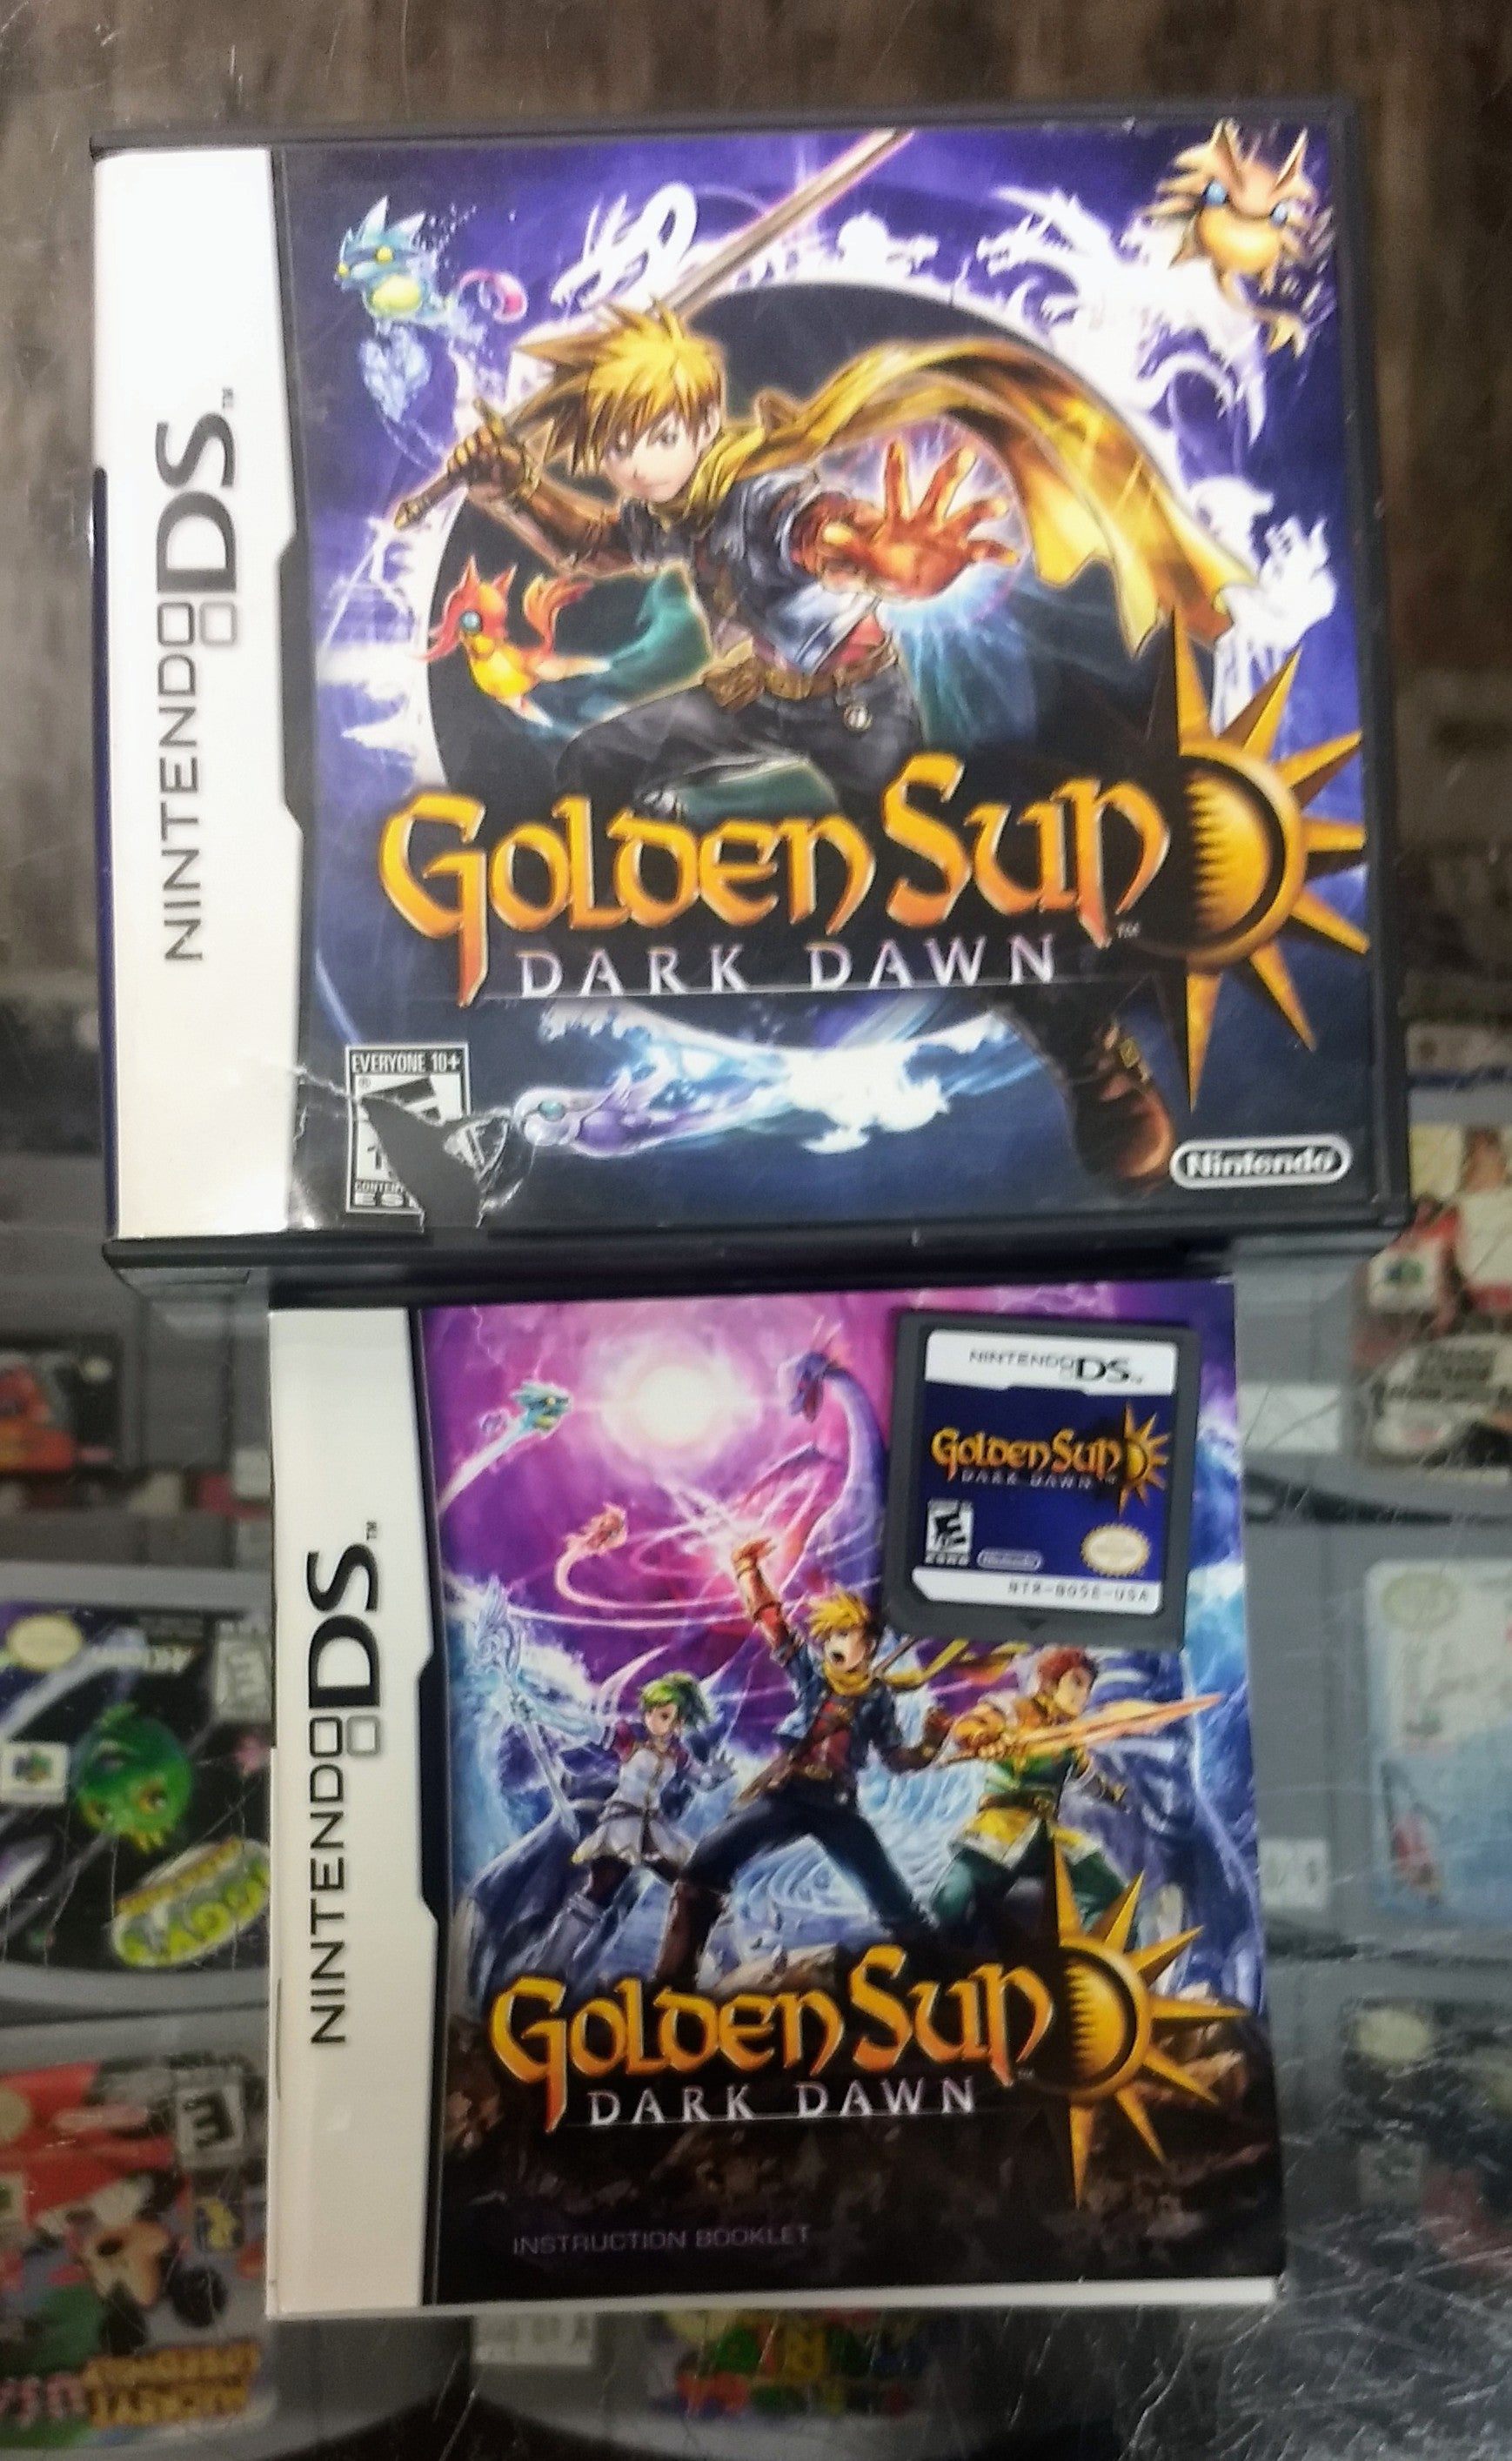 GOLDEN SUN: DARK DAWN (NINTENDO DS) - jeux video game-x